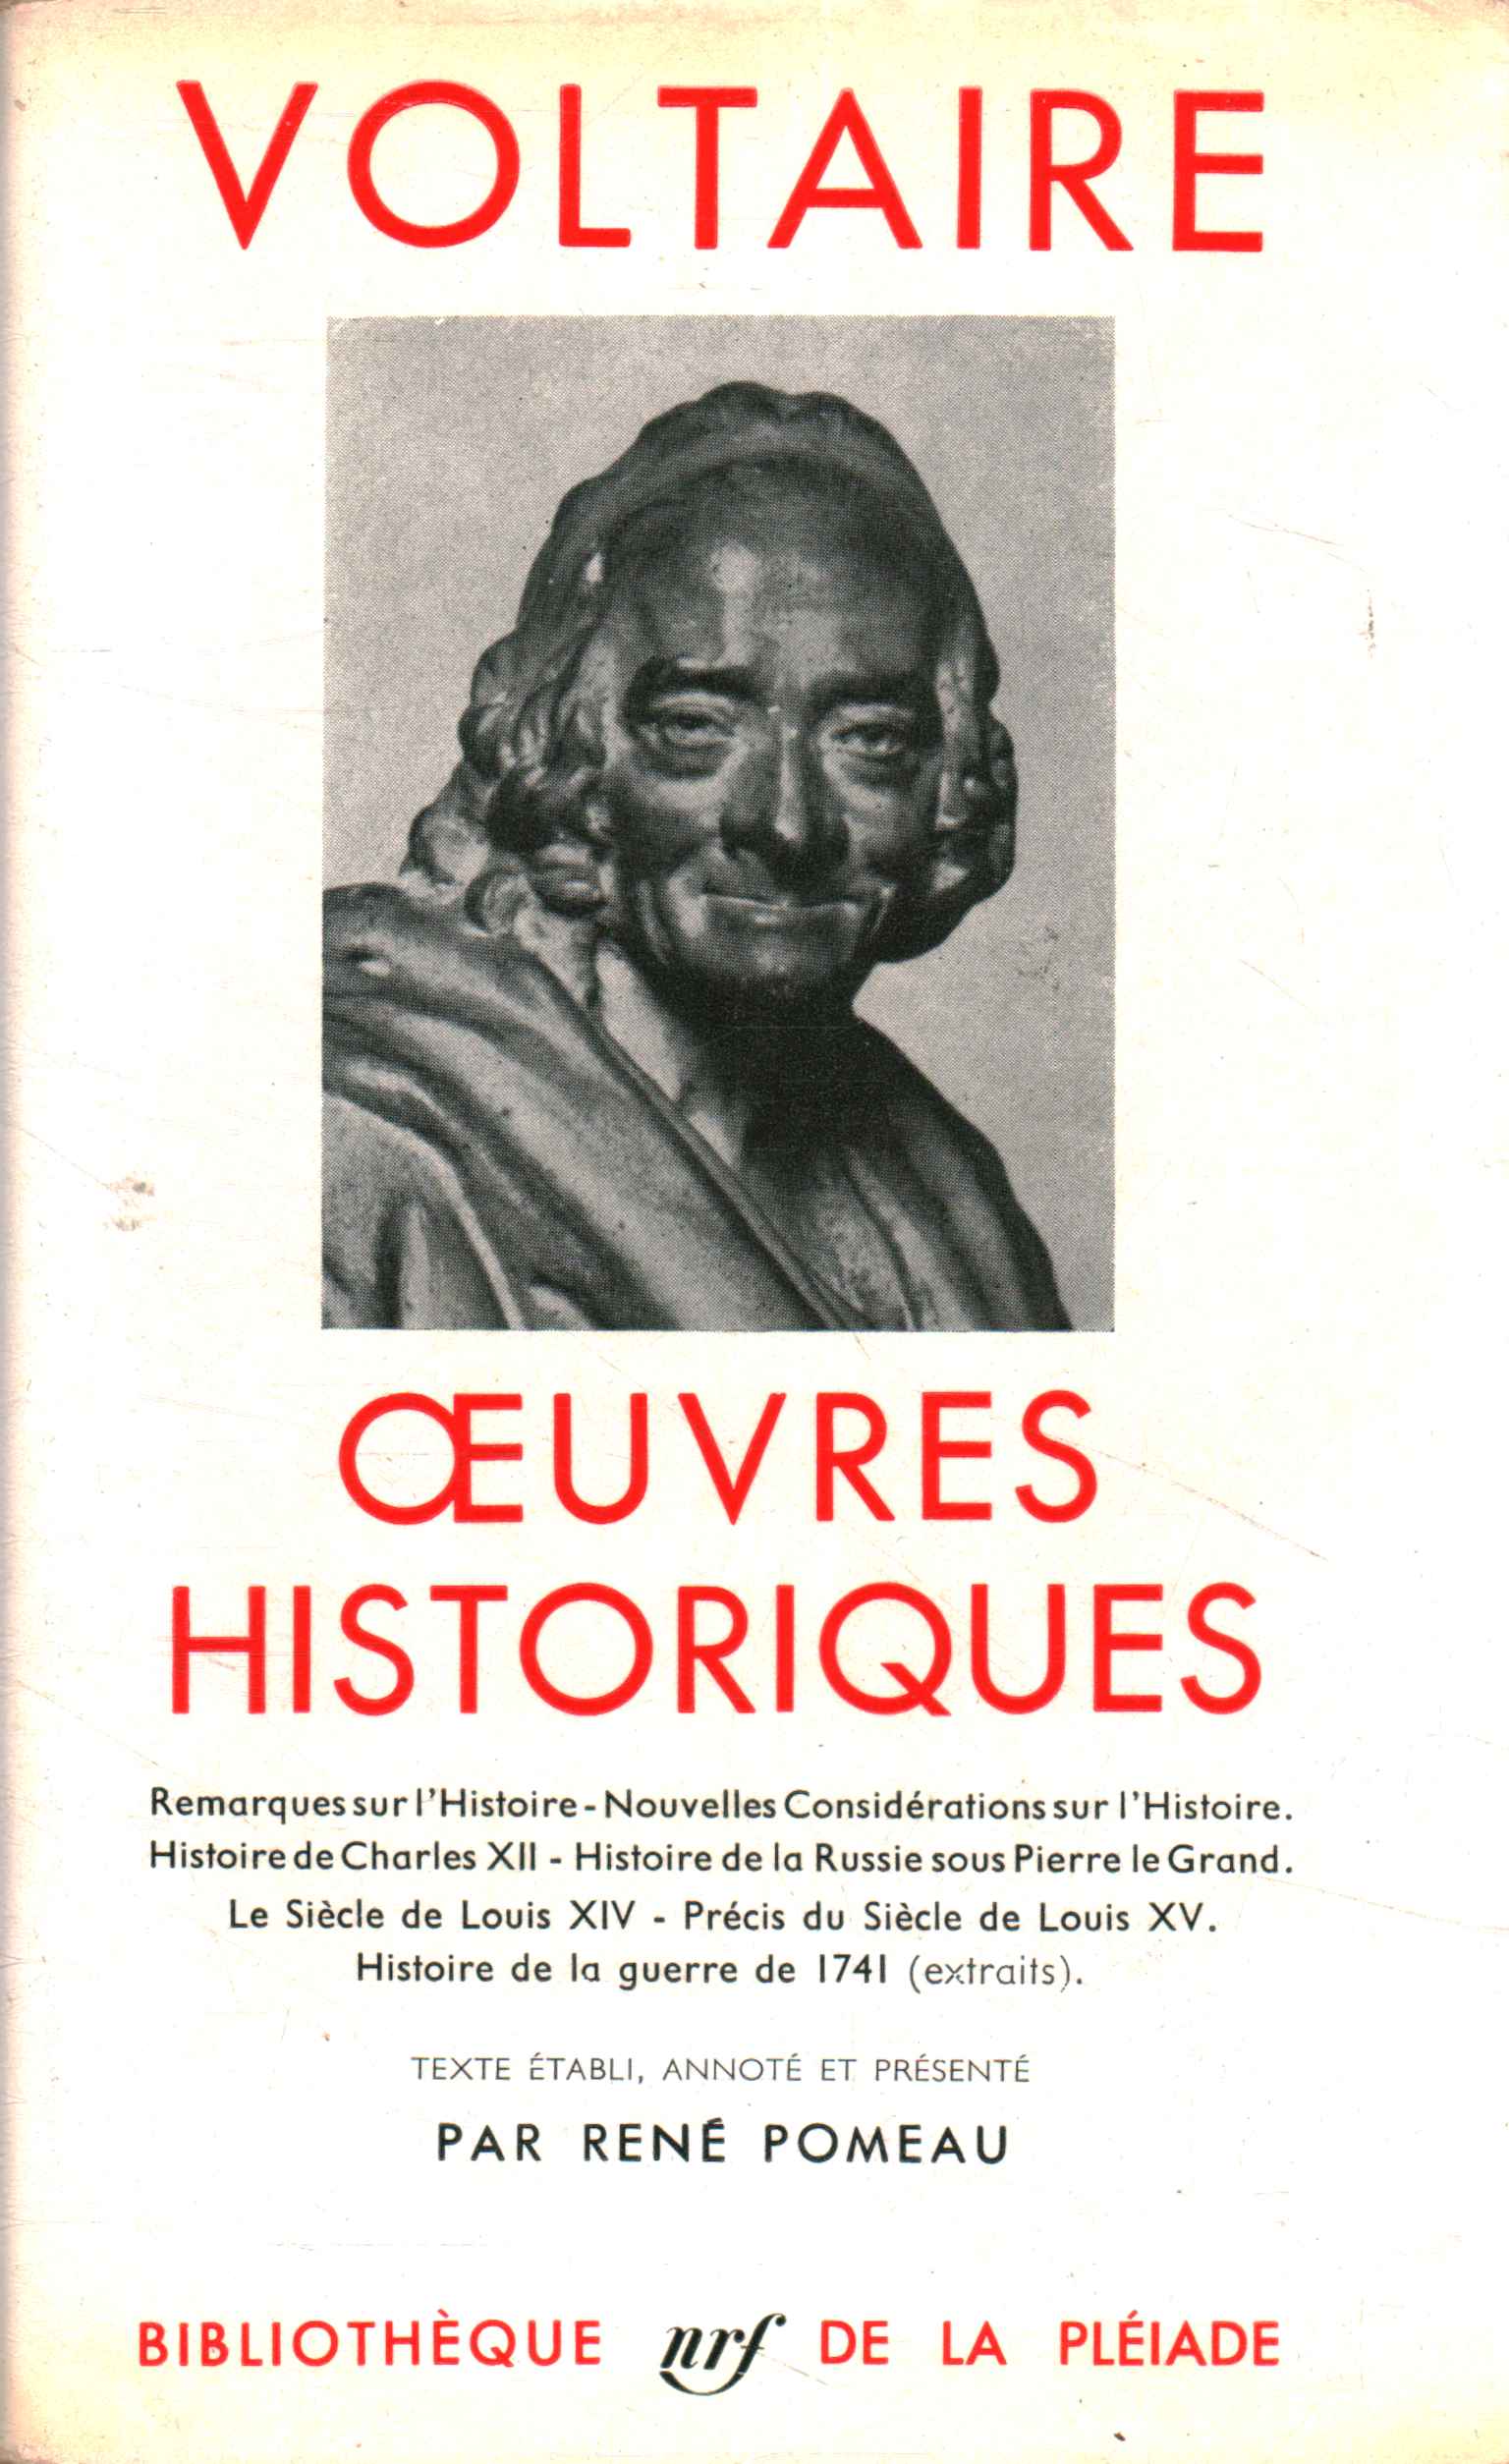 Oeuvres historiques - Voltaire (Bibliothèque de la Pléiade) [1957]